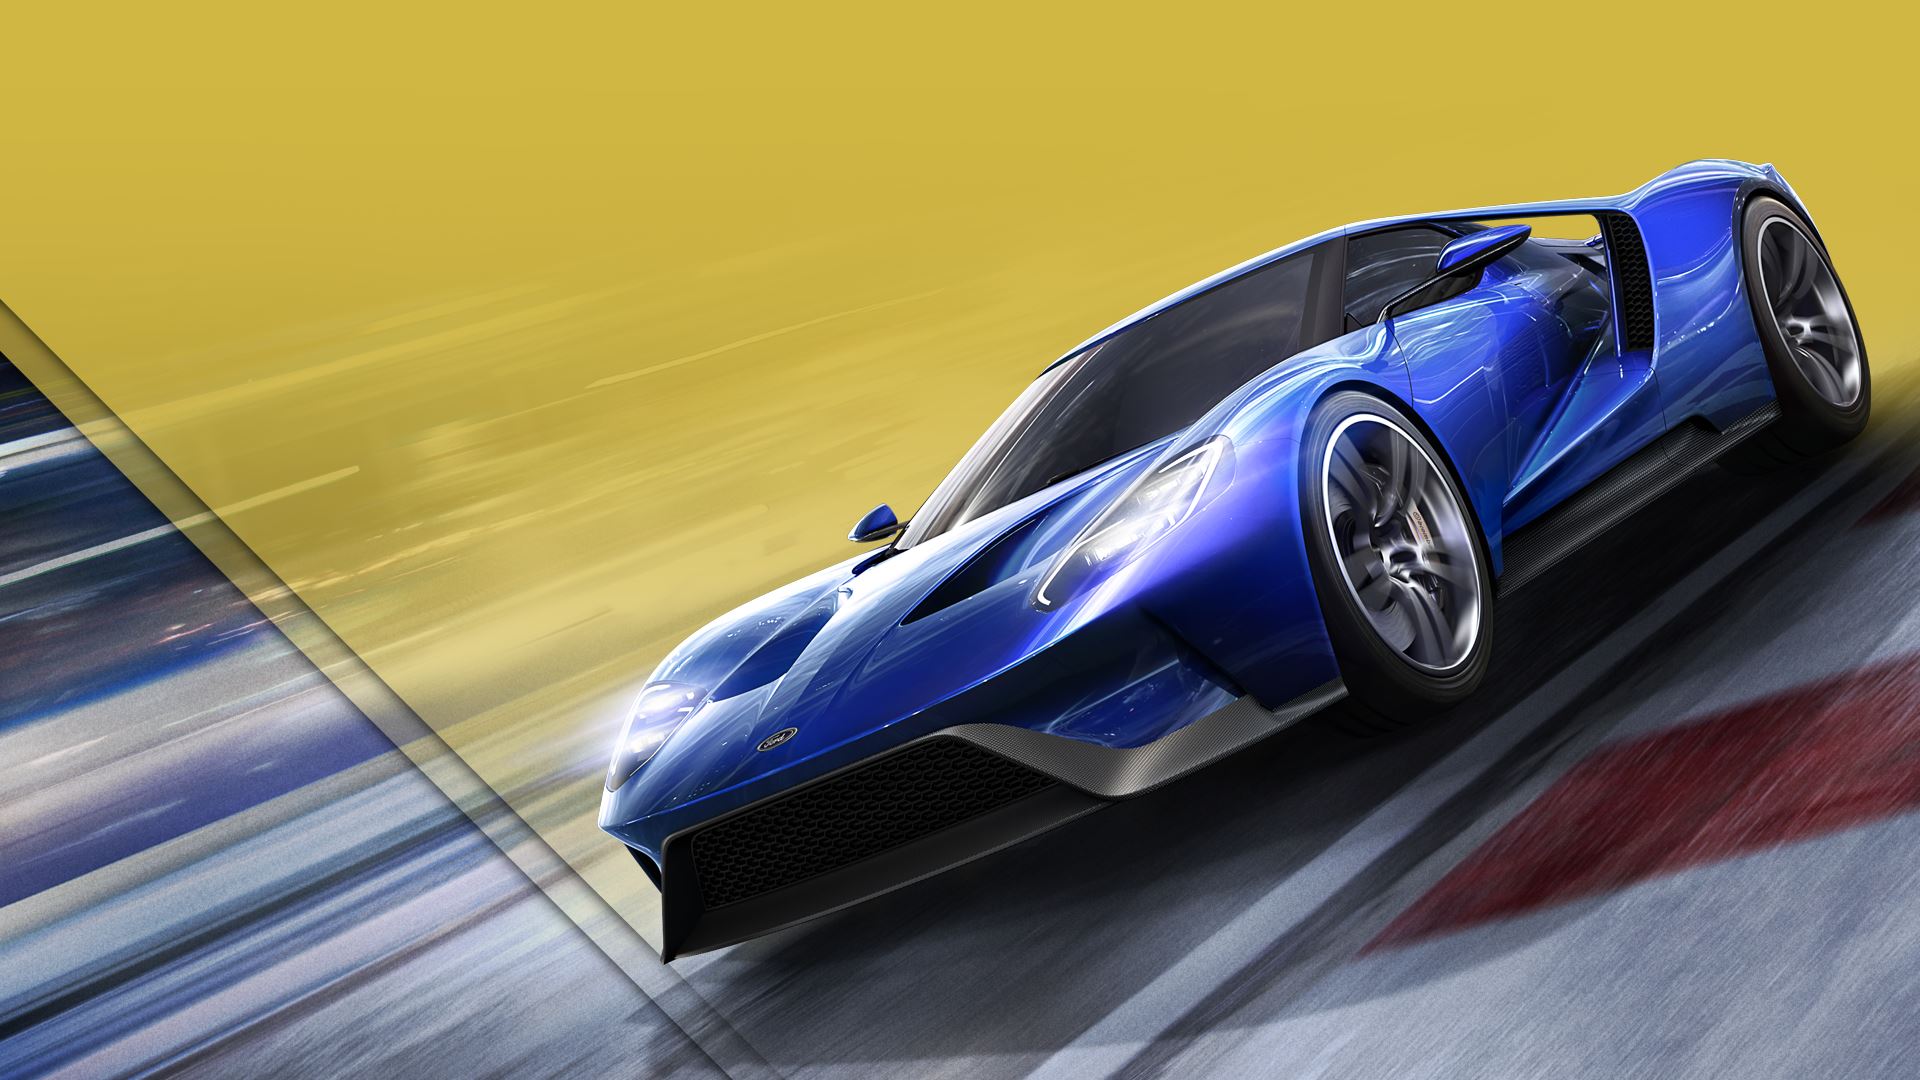 Téléchargez gratuitement l'image Jeux Vidéo, Forza Motorsport 6, Forza sur le bureau de votre PC